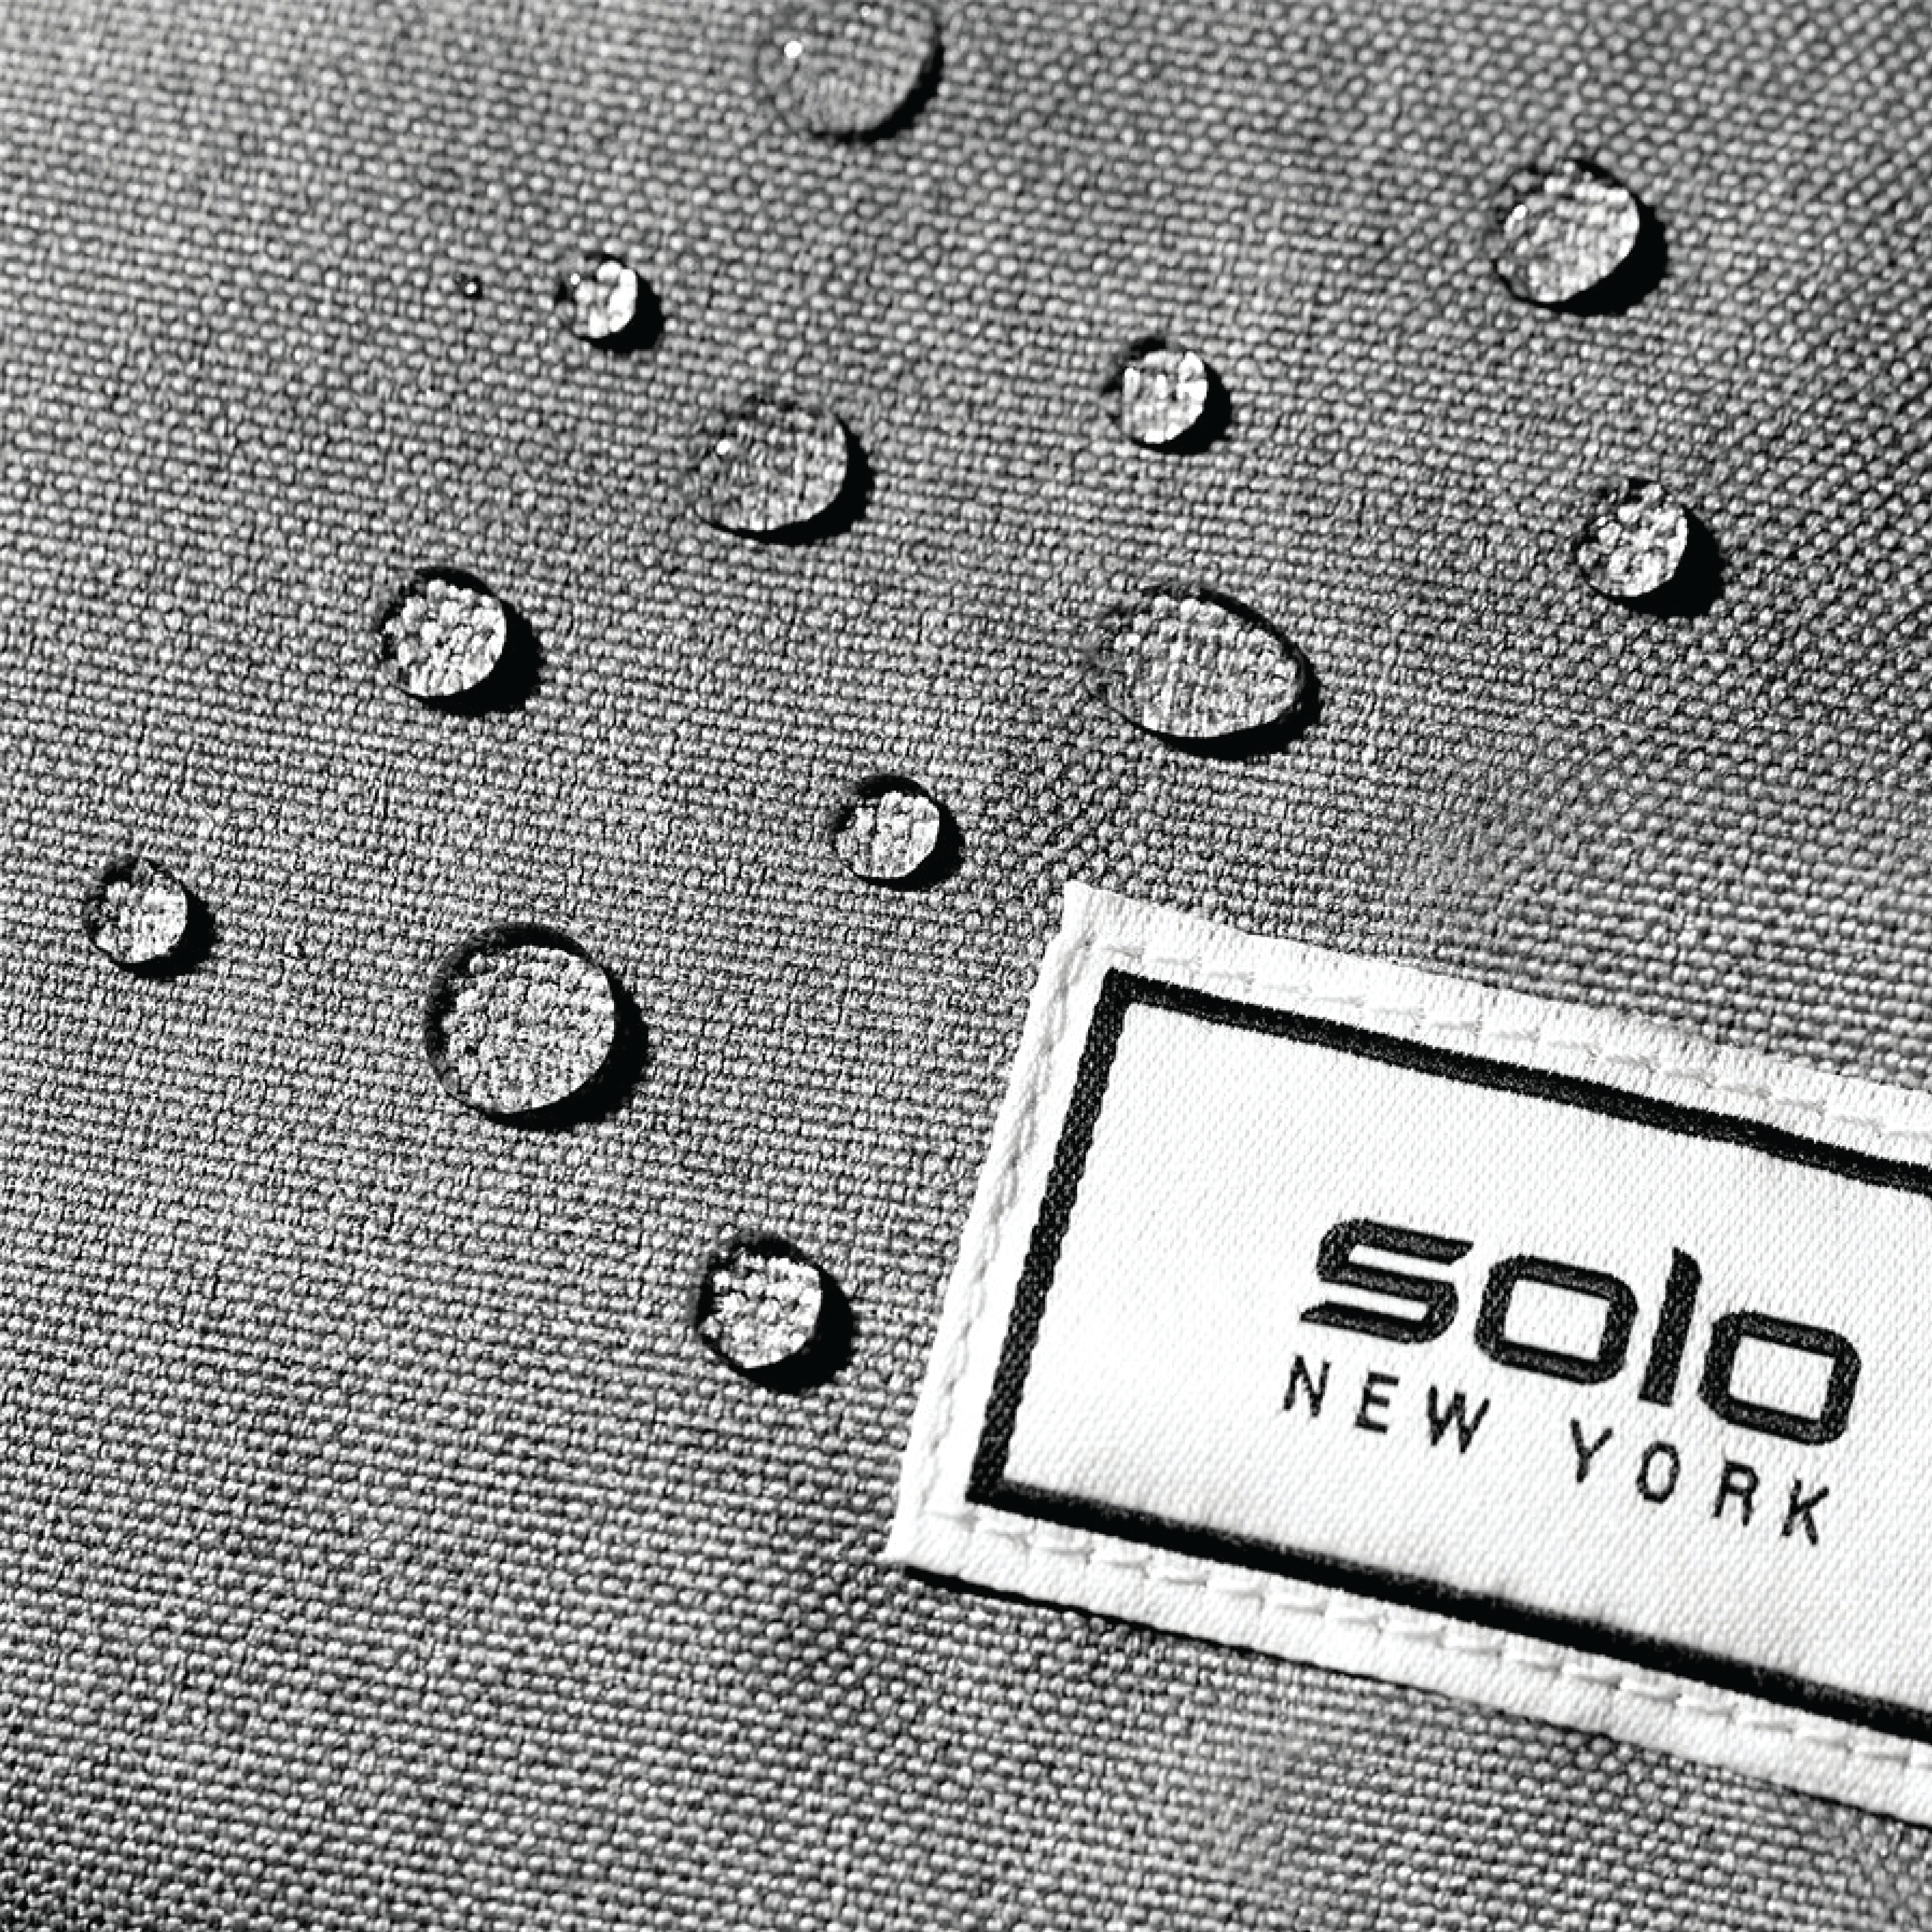 Balo Solo Re: Define 15.6 inch UBN708-4 Đen (Hàng Chính Hãng - Bảo Hành 5 Năm)